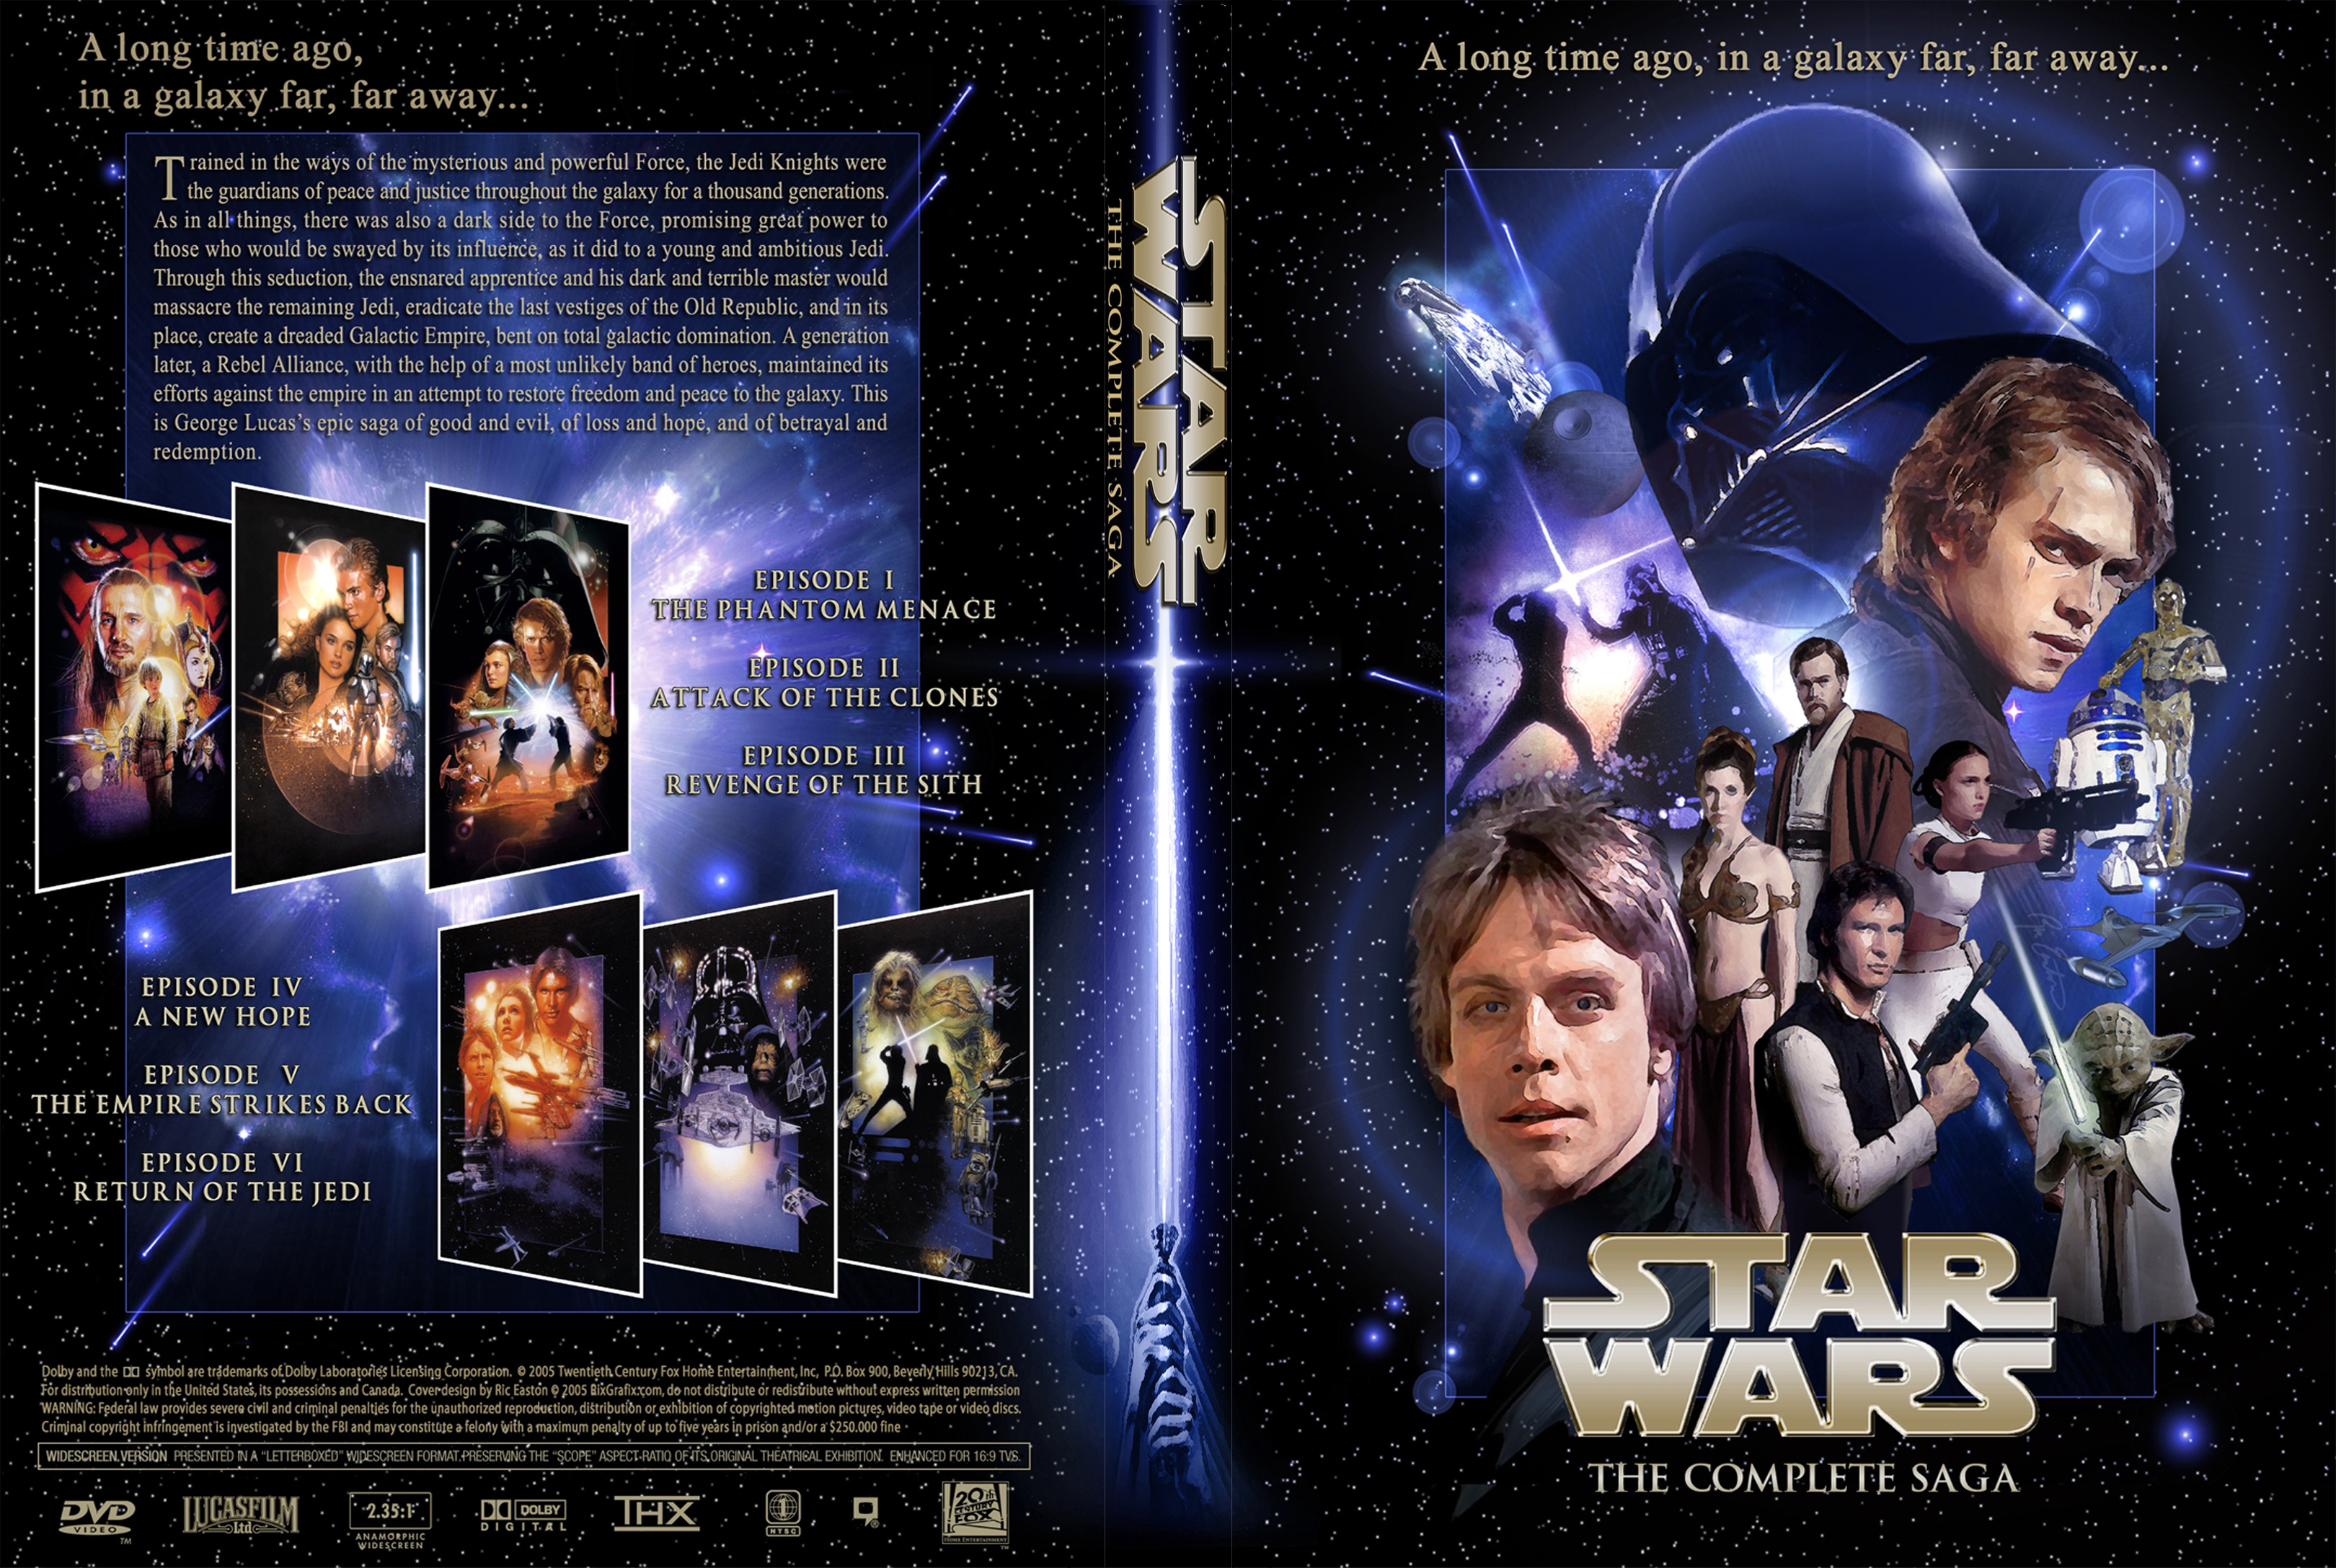 star wars dvd box set all 6 movies